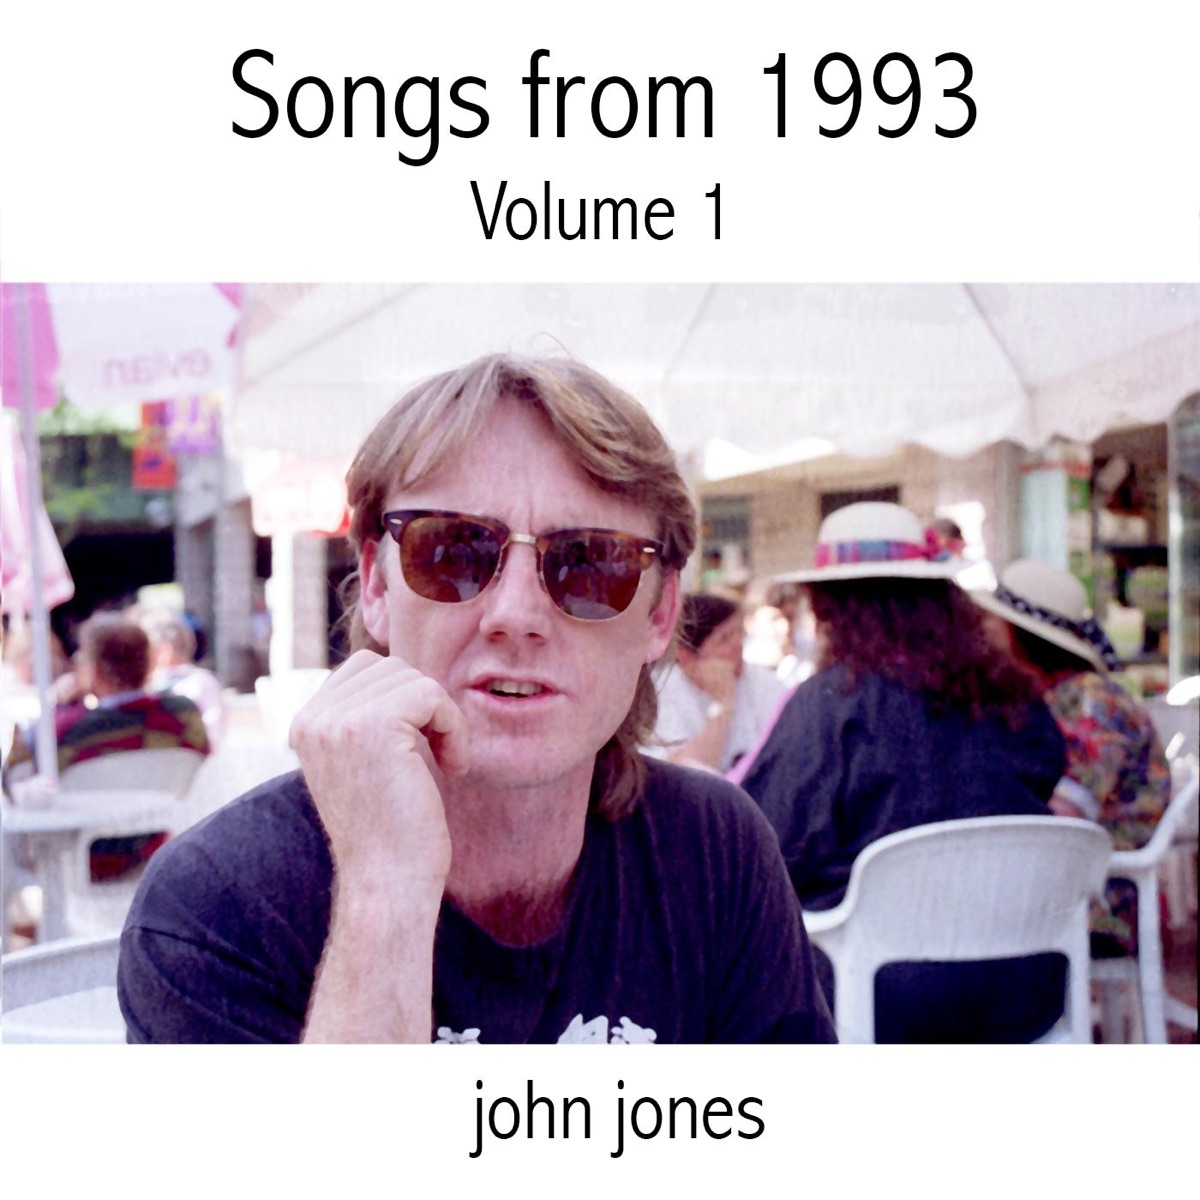 Hitler Has Only Got One Ball - Single - Album by John Jones - Apple Music